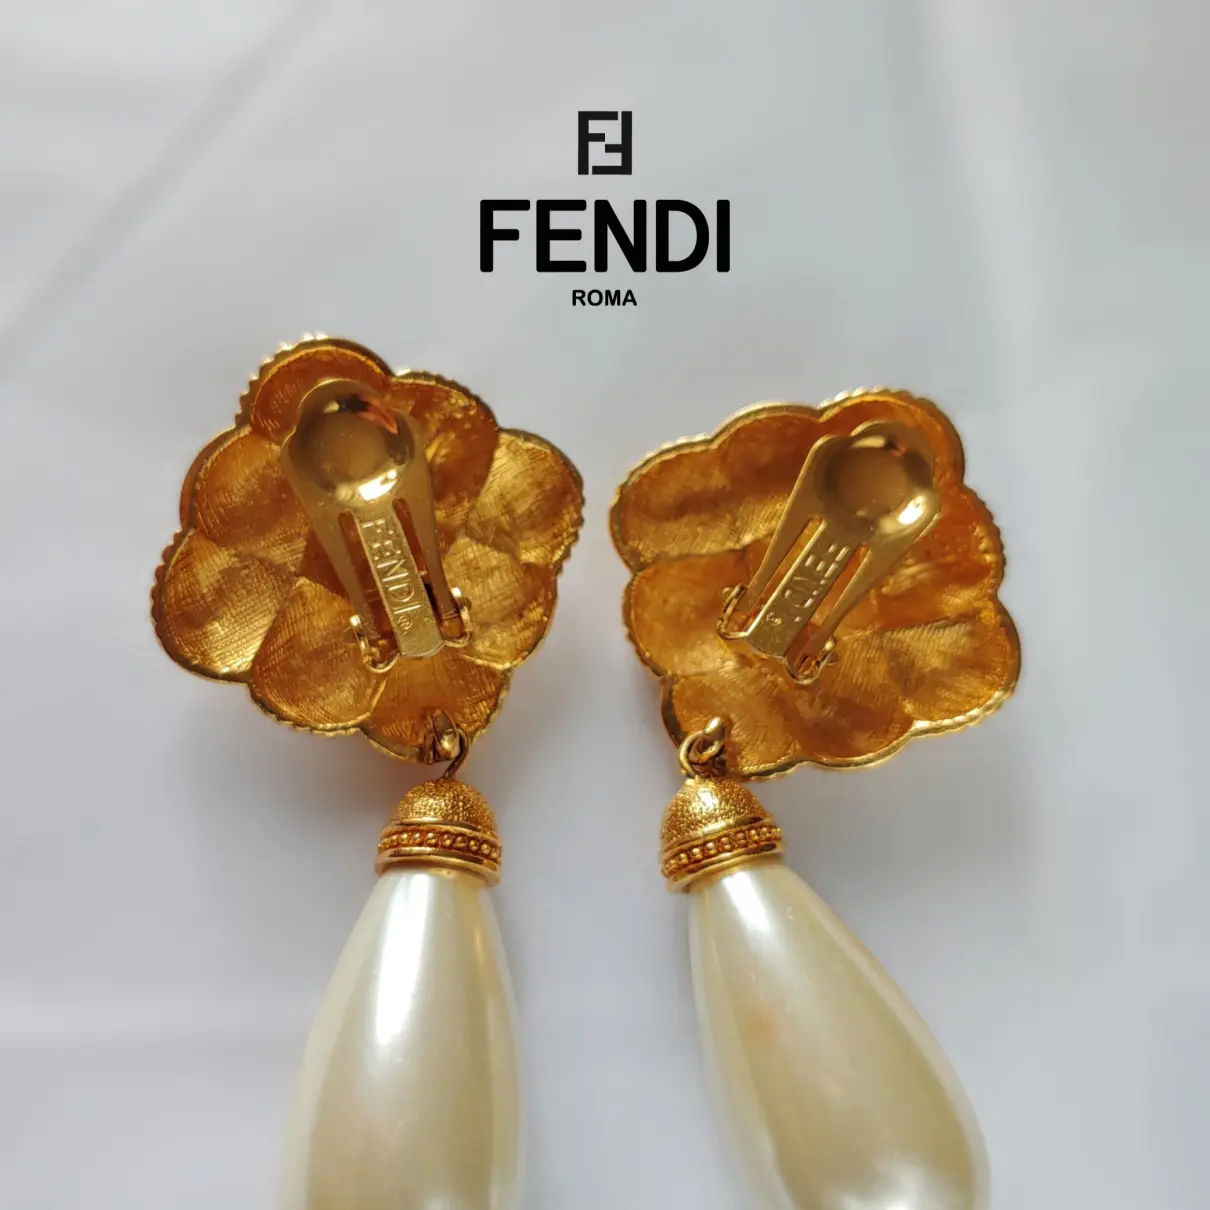 Buy Fendi Earrings online